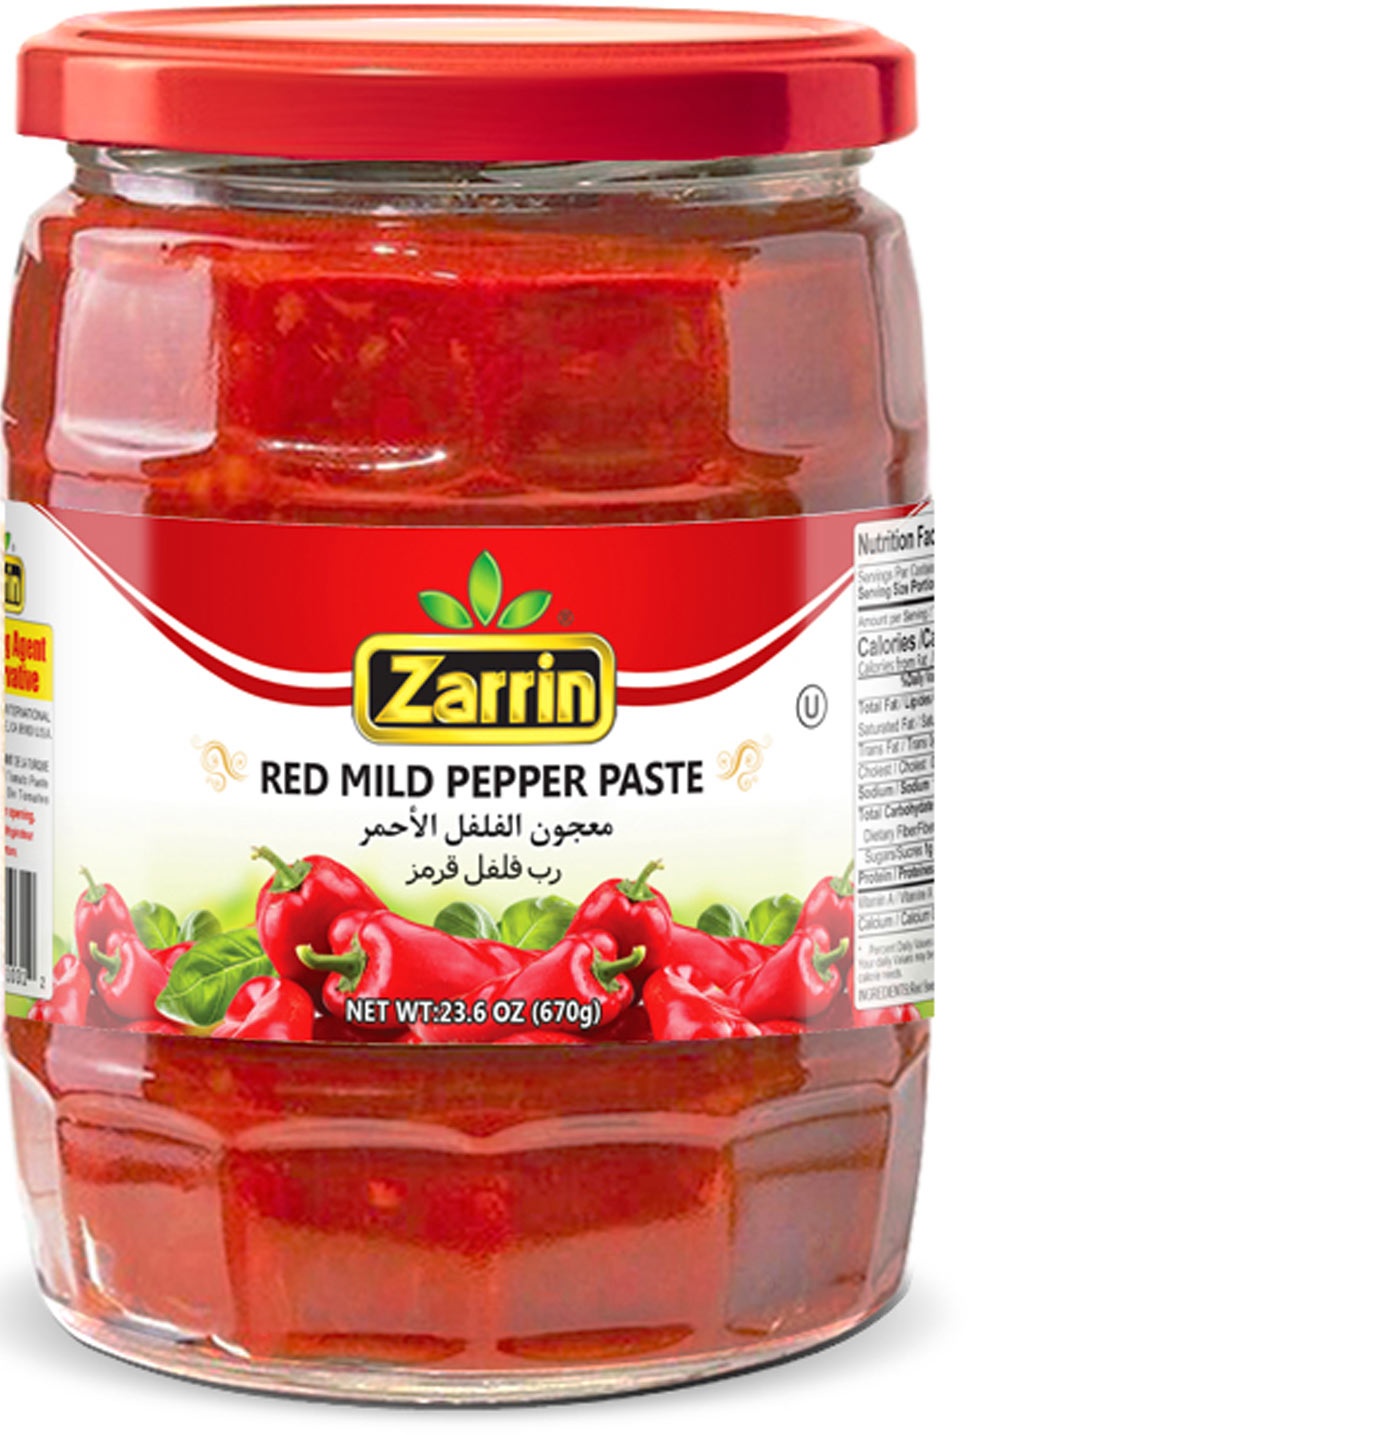 Zarrin mild pepper paste in 23.6 oz  glass jar.